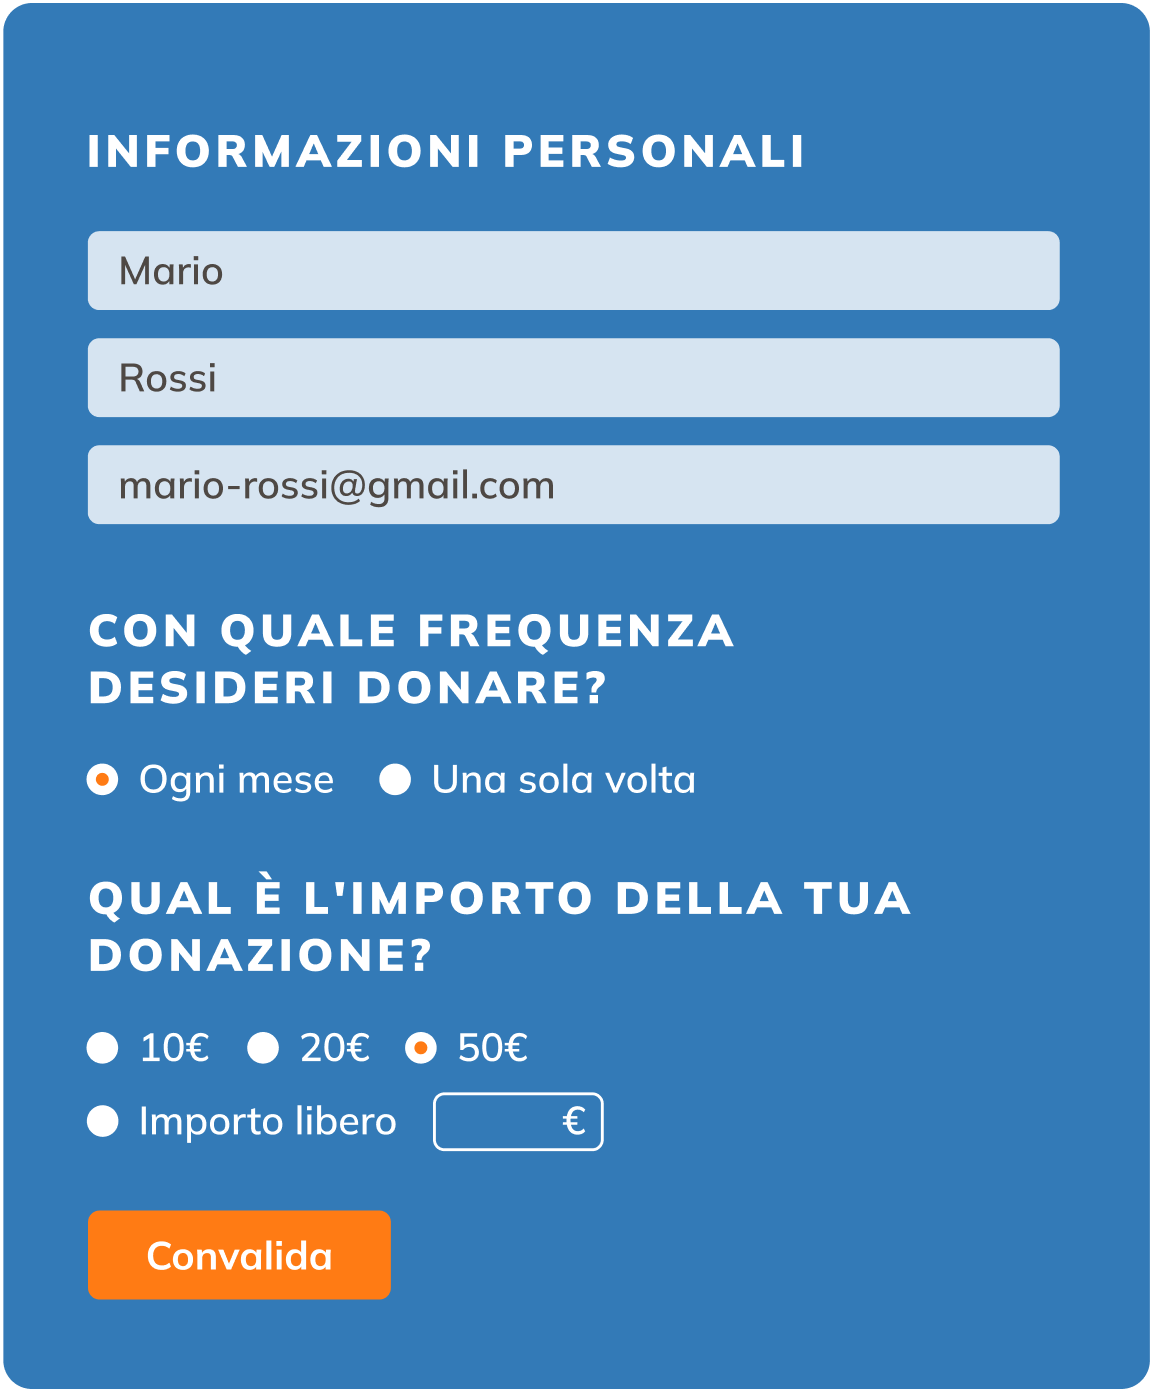 03 - it - Donazioni - Raccogli donazioni online in modo rapido e facile